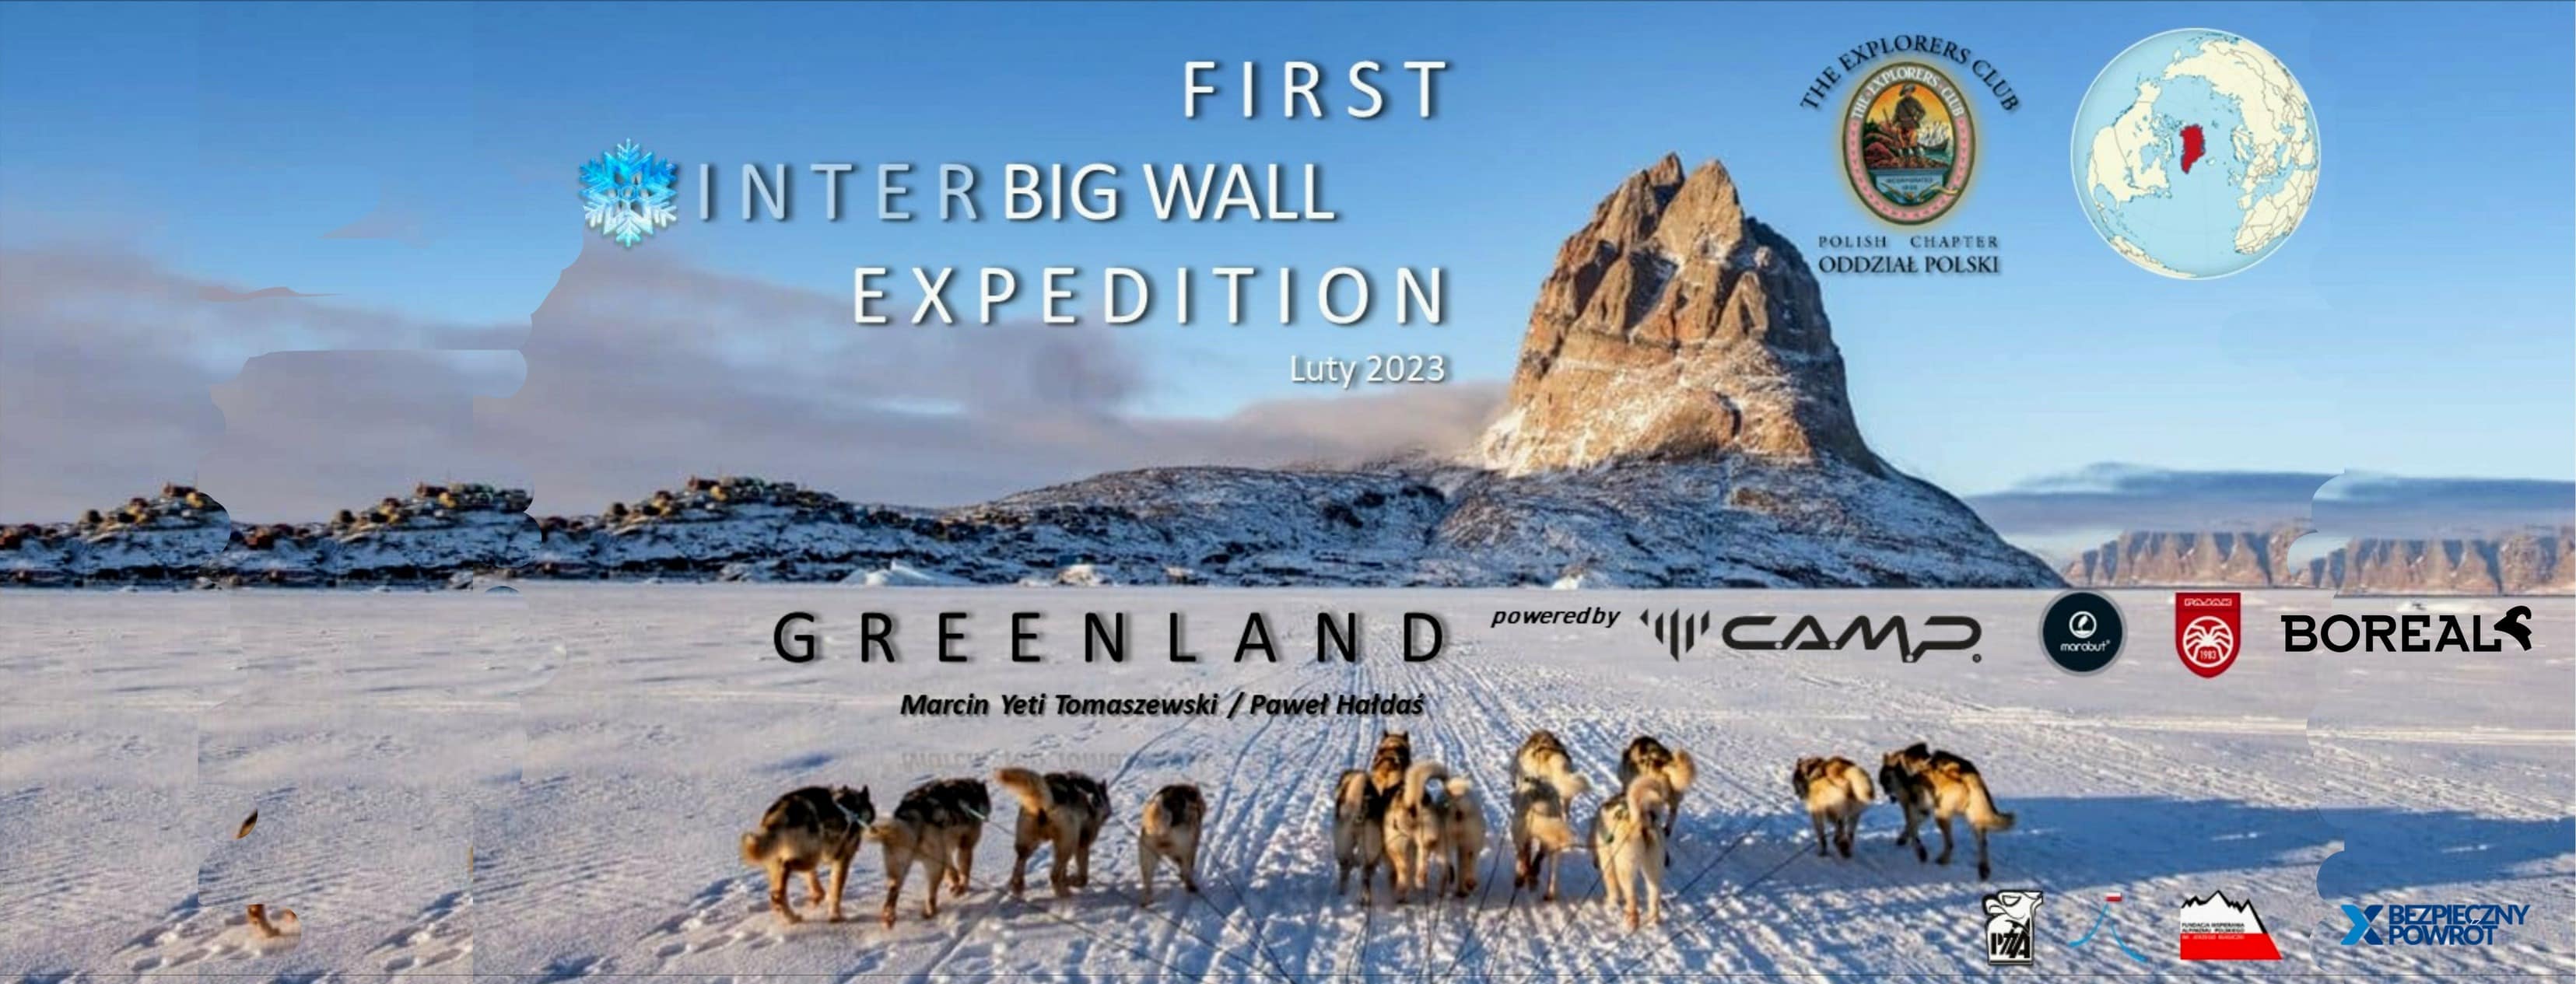 Obrazy dla interbig wall expedition